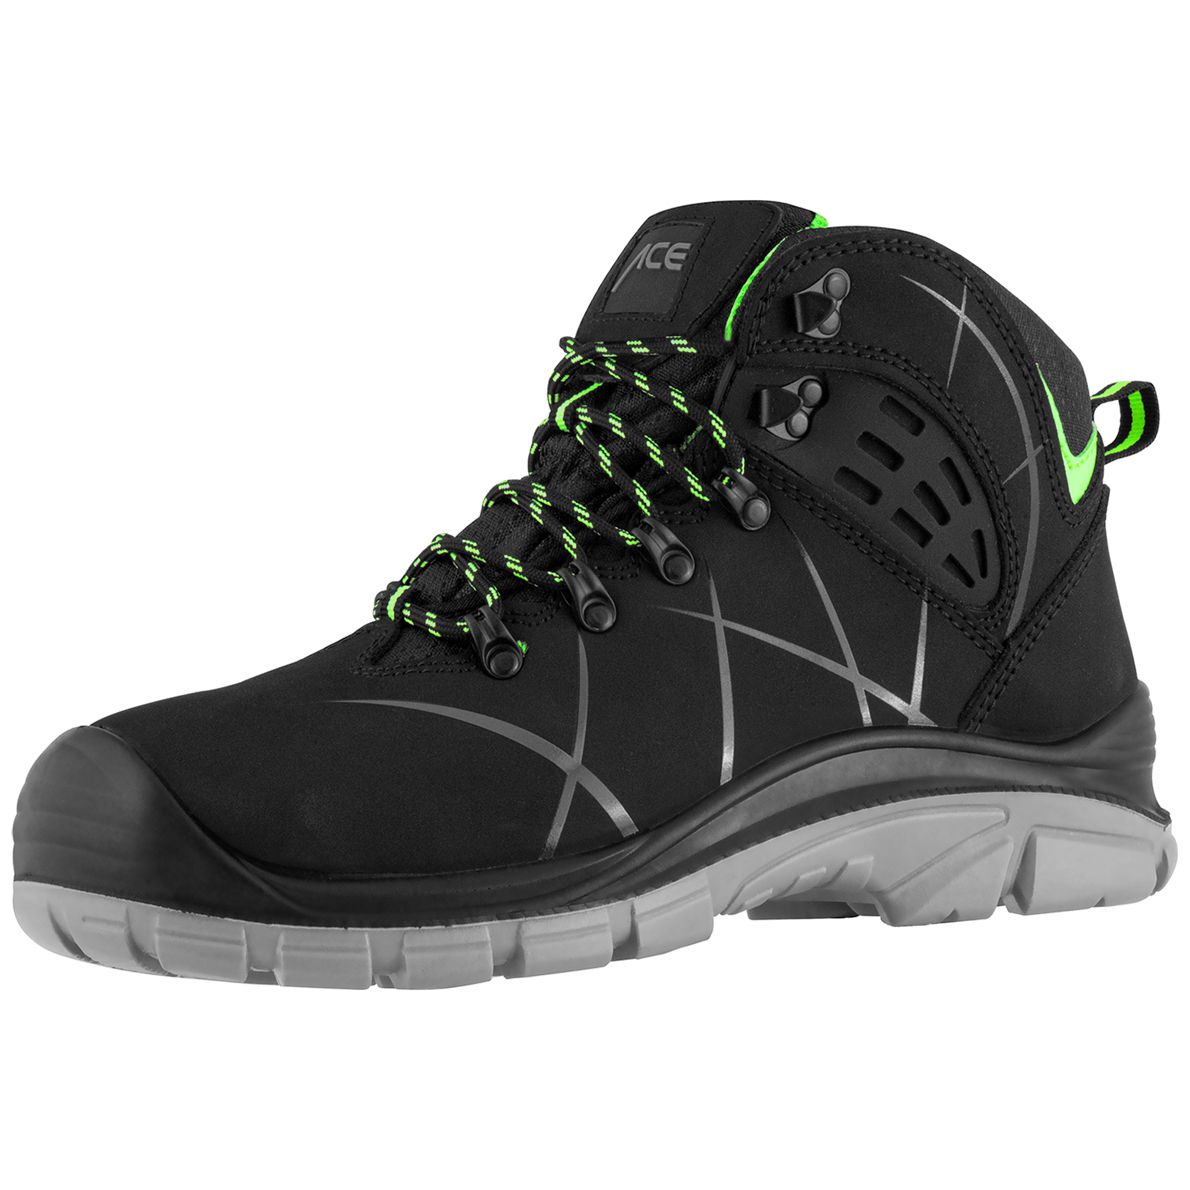 Schwarz/Grün ACE Constructor S3-Arbeits-Sneakers mit Stahlkappe Sicherheits-Schuhe für die Arbeit 